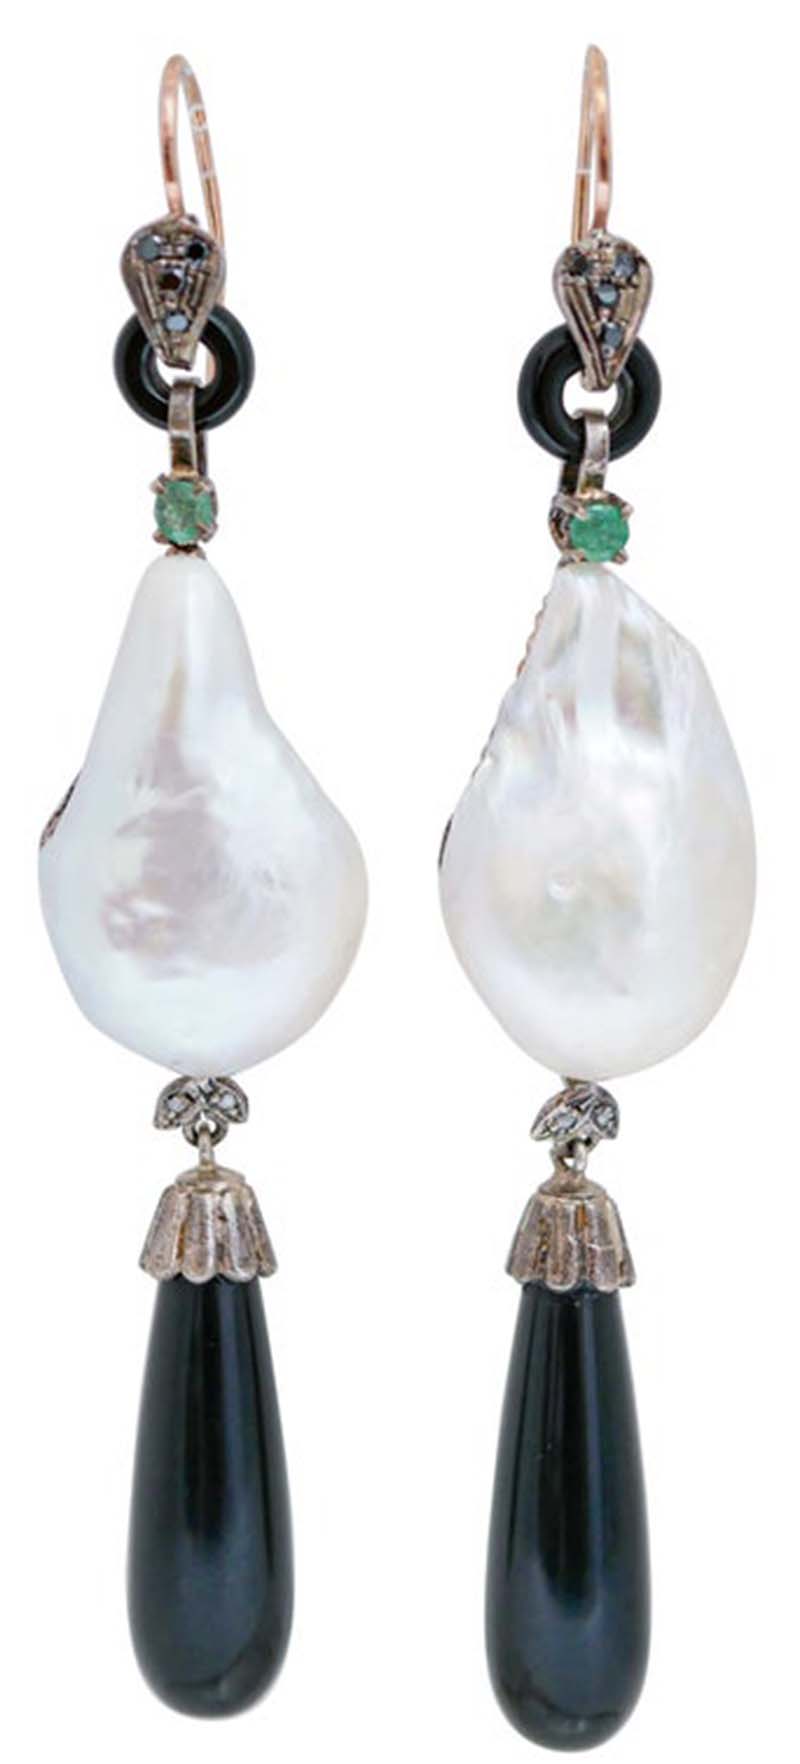 Ohrringe aus Roségold und Silber mit Perlen, Smaragden, Onyx, Saphiren, Diamanten.